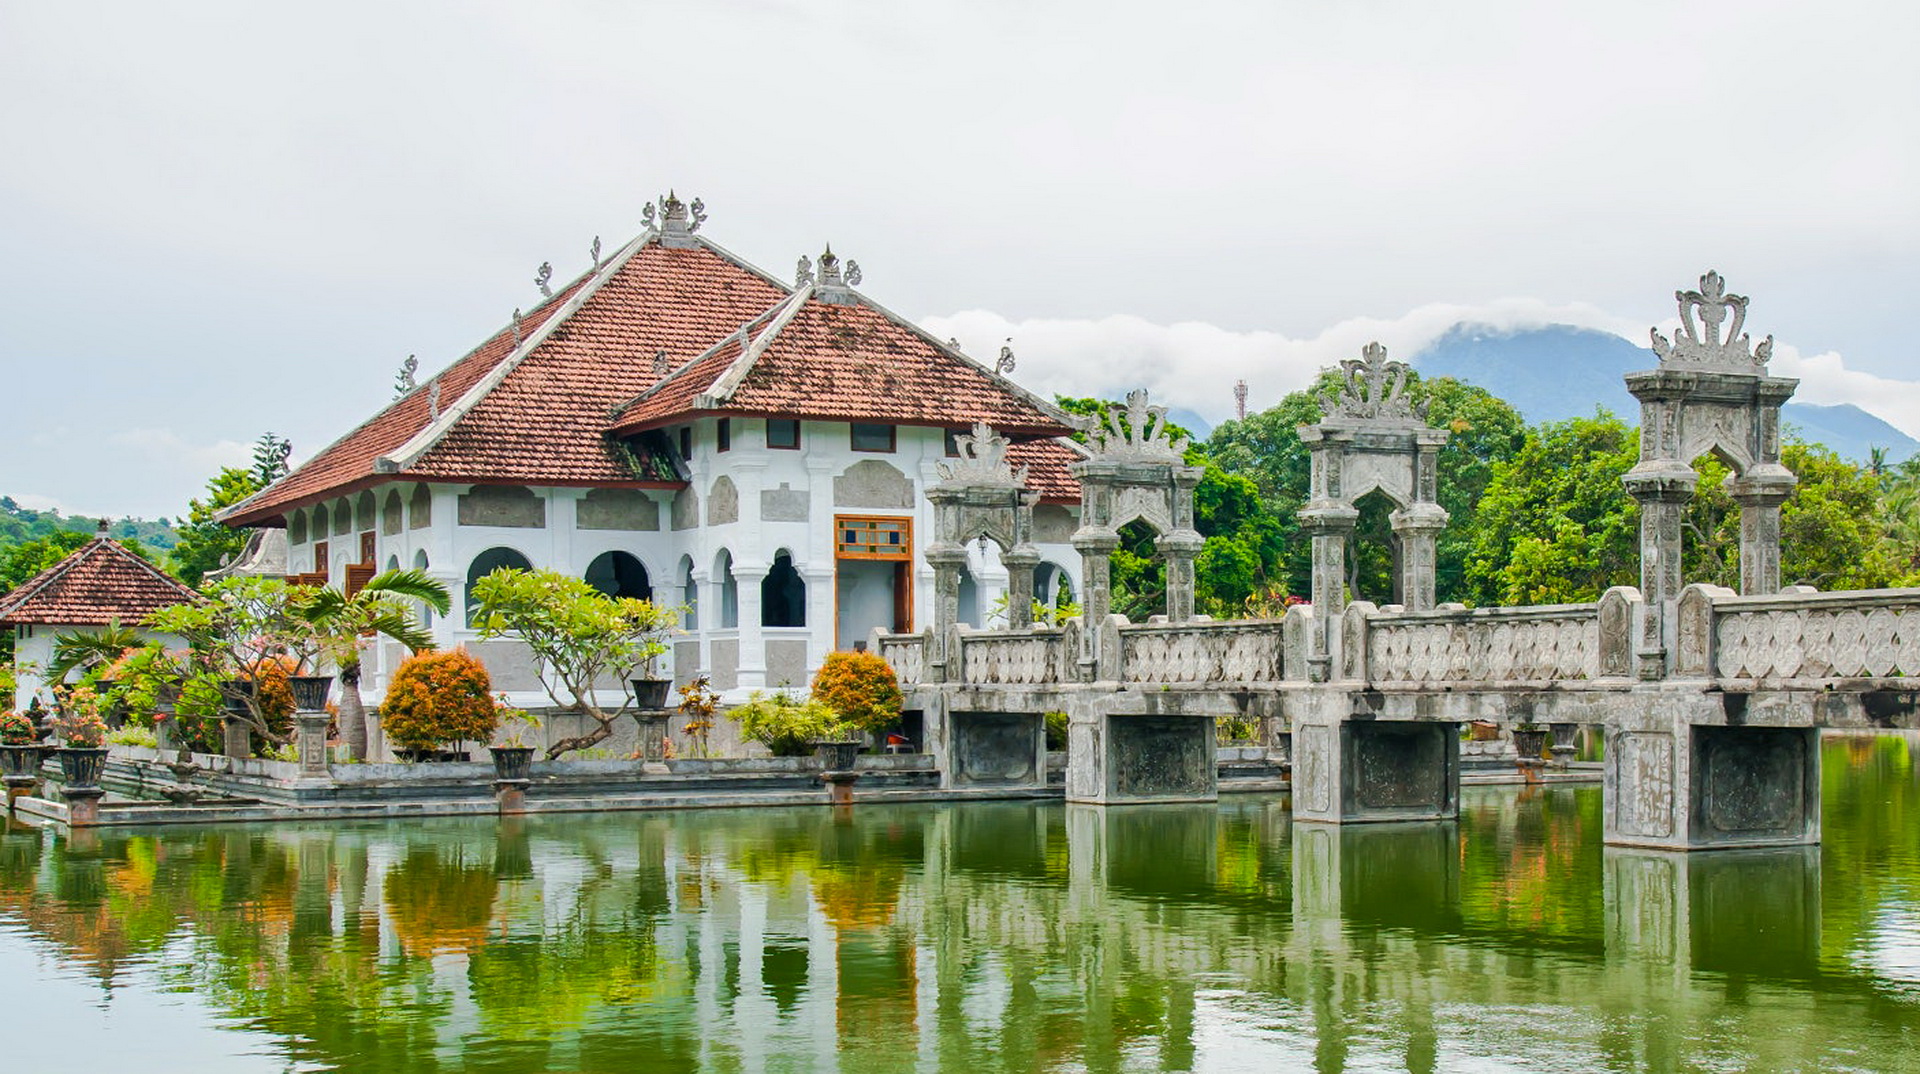 Tours a los lugares de interés - Ujung Water Palace Este de Bali